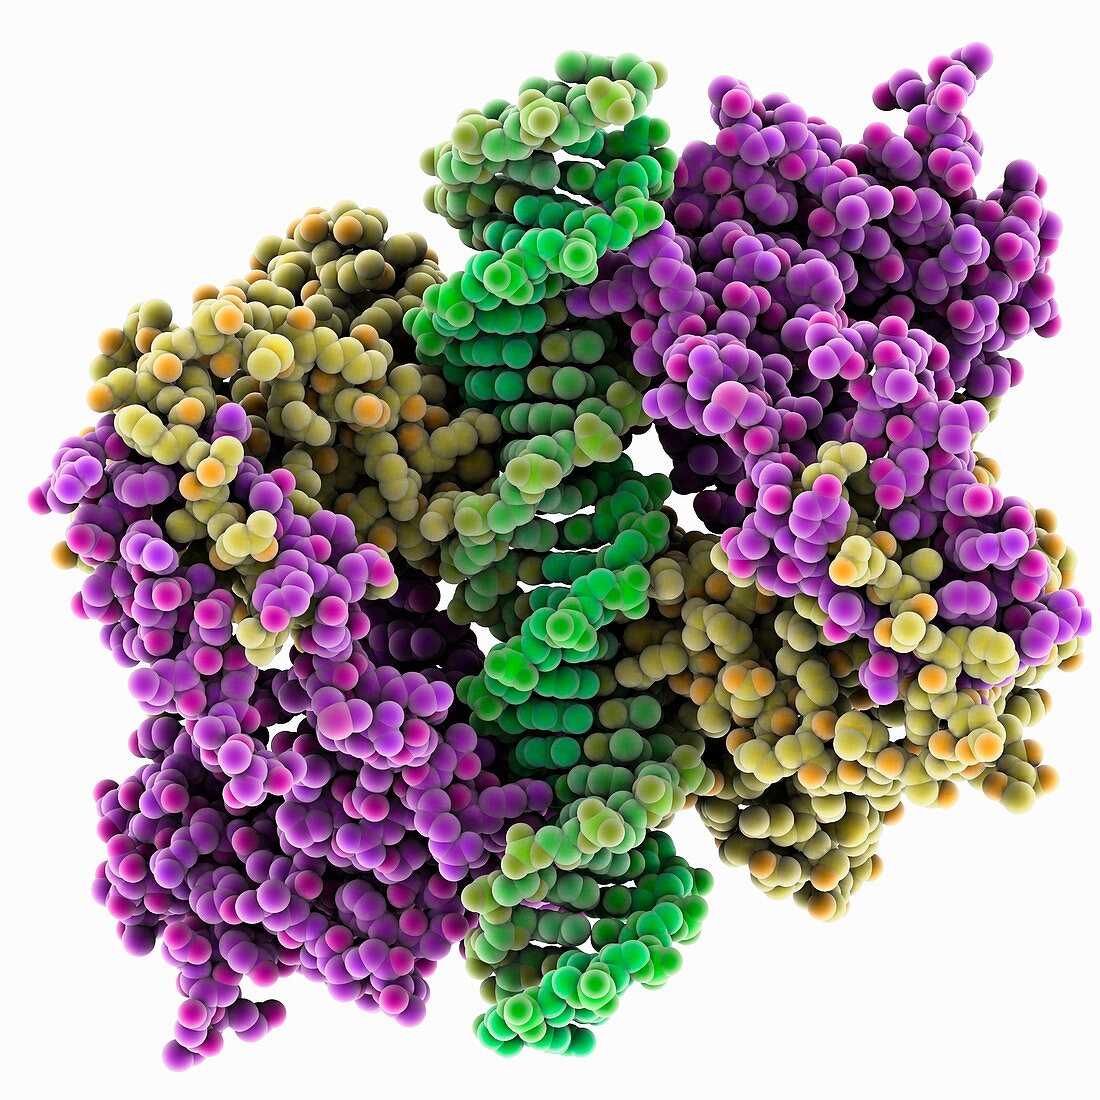 Engineered p53 DNA complex